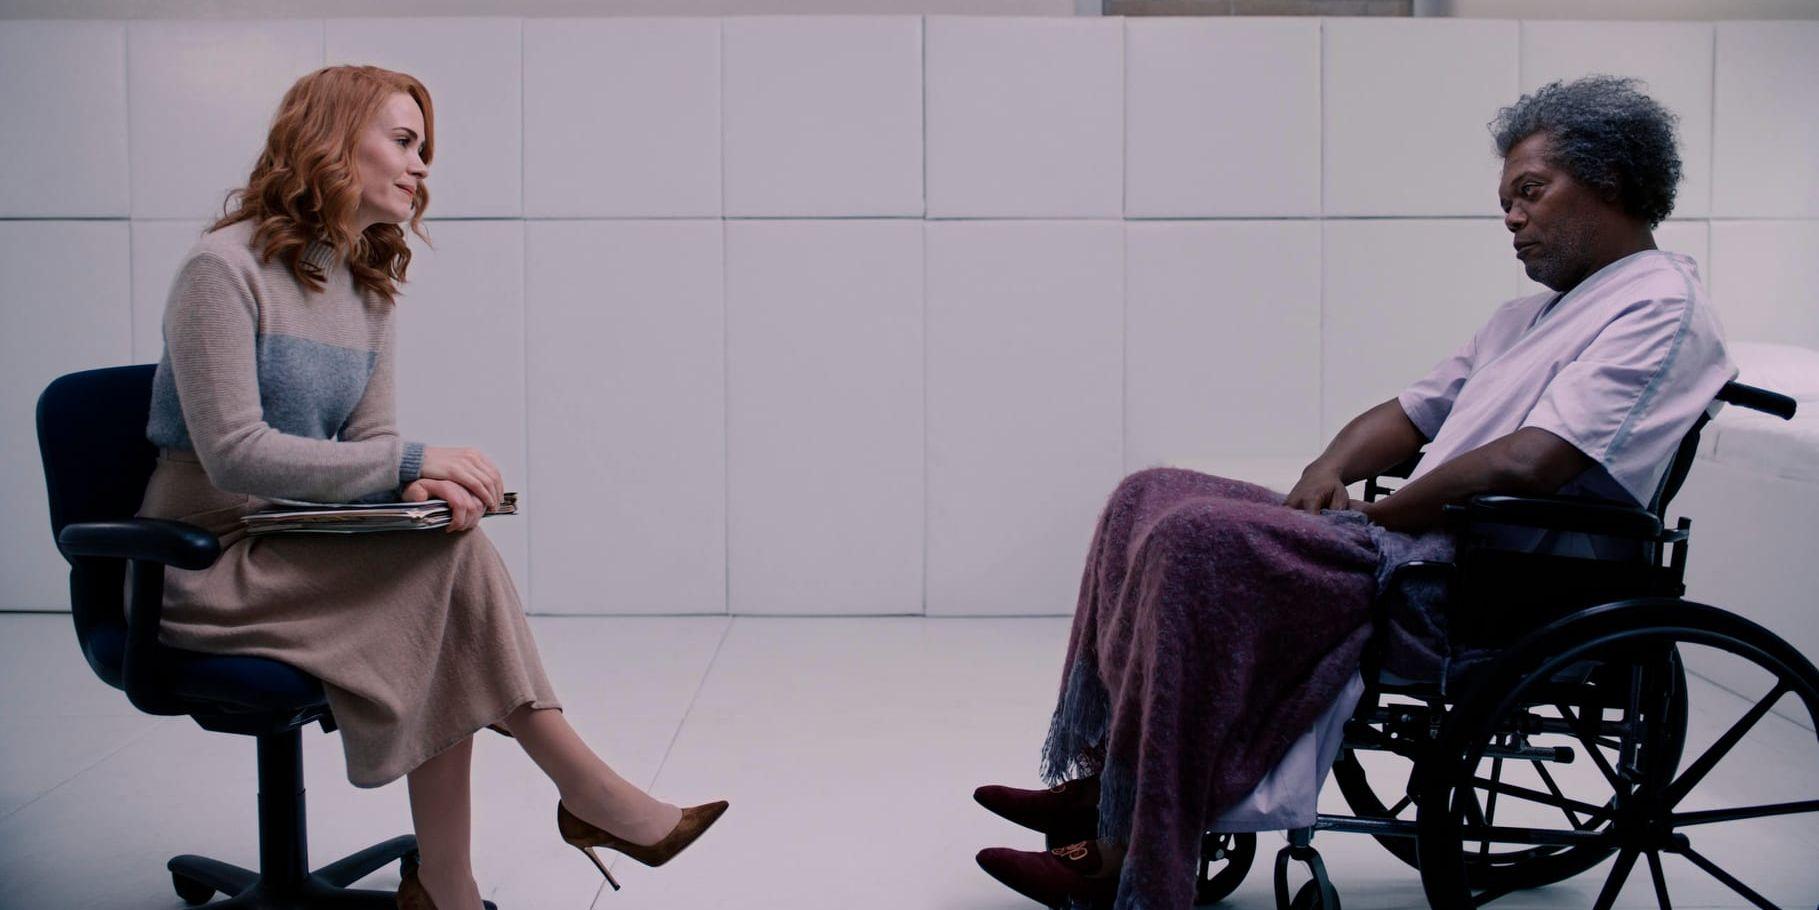 Psykologen Ellie Staple (Sarah Paulson) och hennes patient Elijah (Samuel L Jackson), som kanske lider av vanföreställningar om sina krafter. Pressbild.